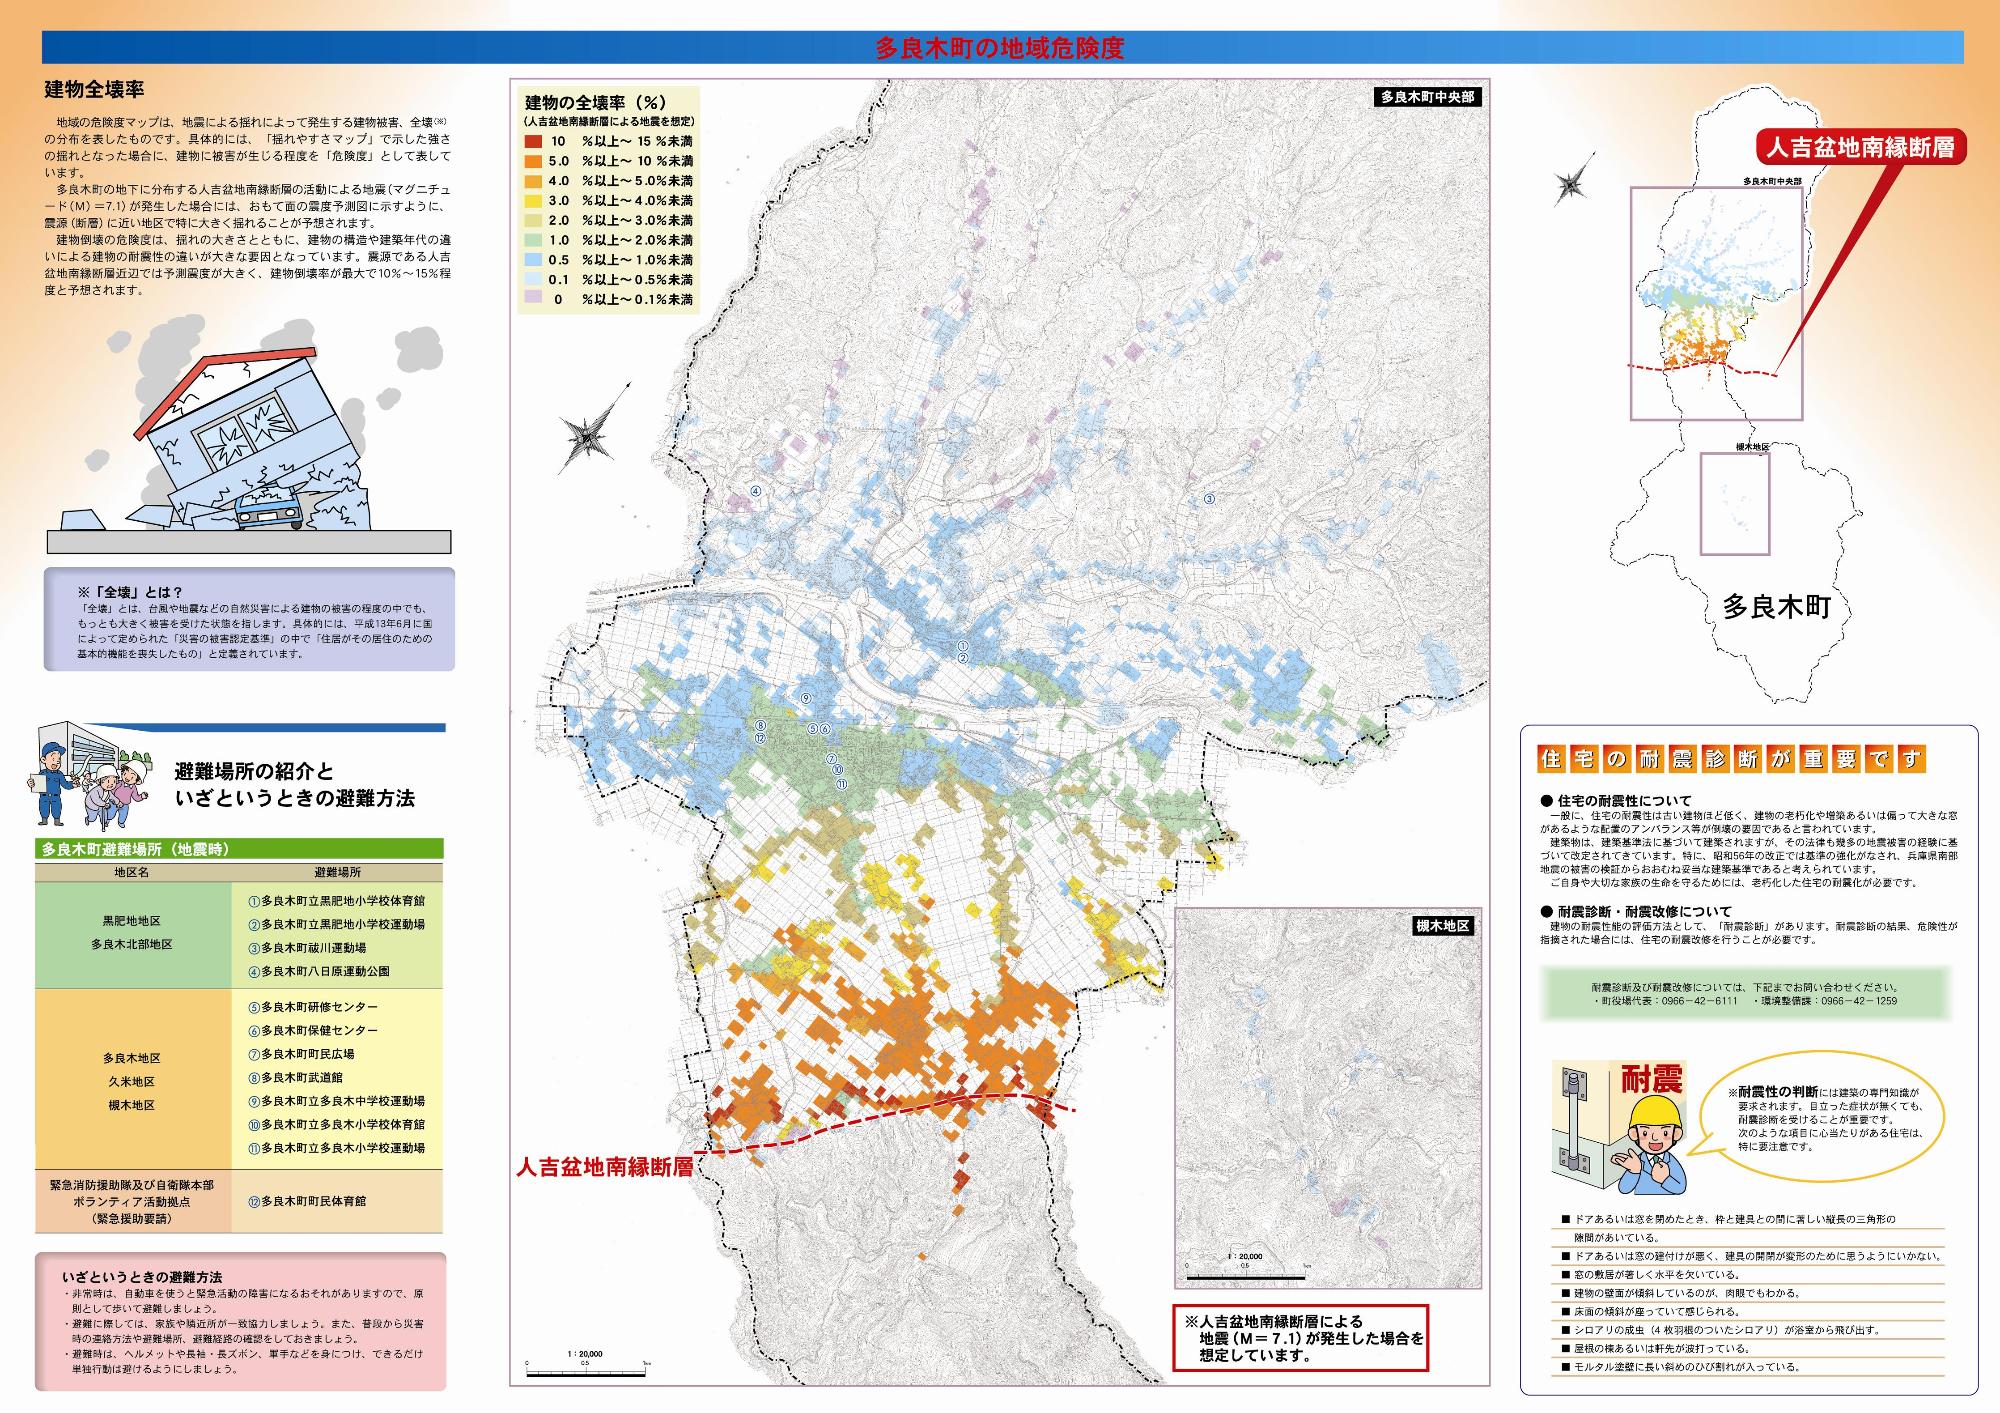 地震防災マップの裏面画像。地域ごとの建物全壊率がマップ上に色で表されています。